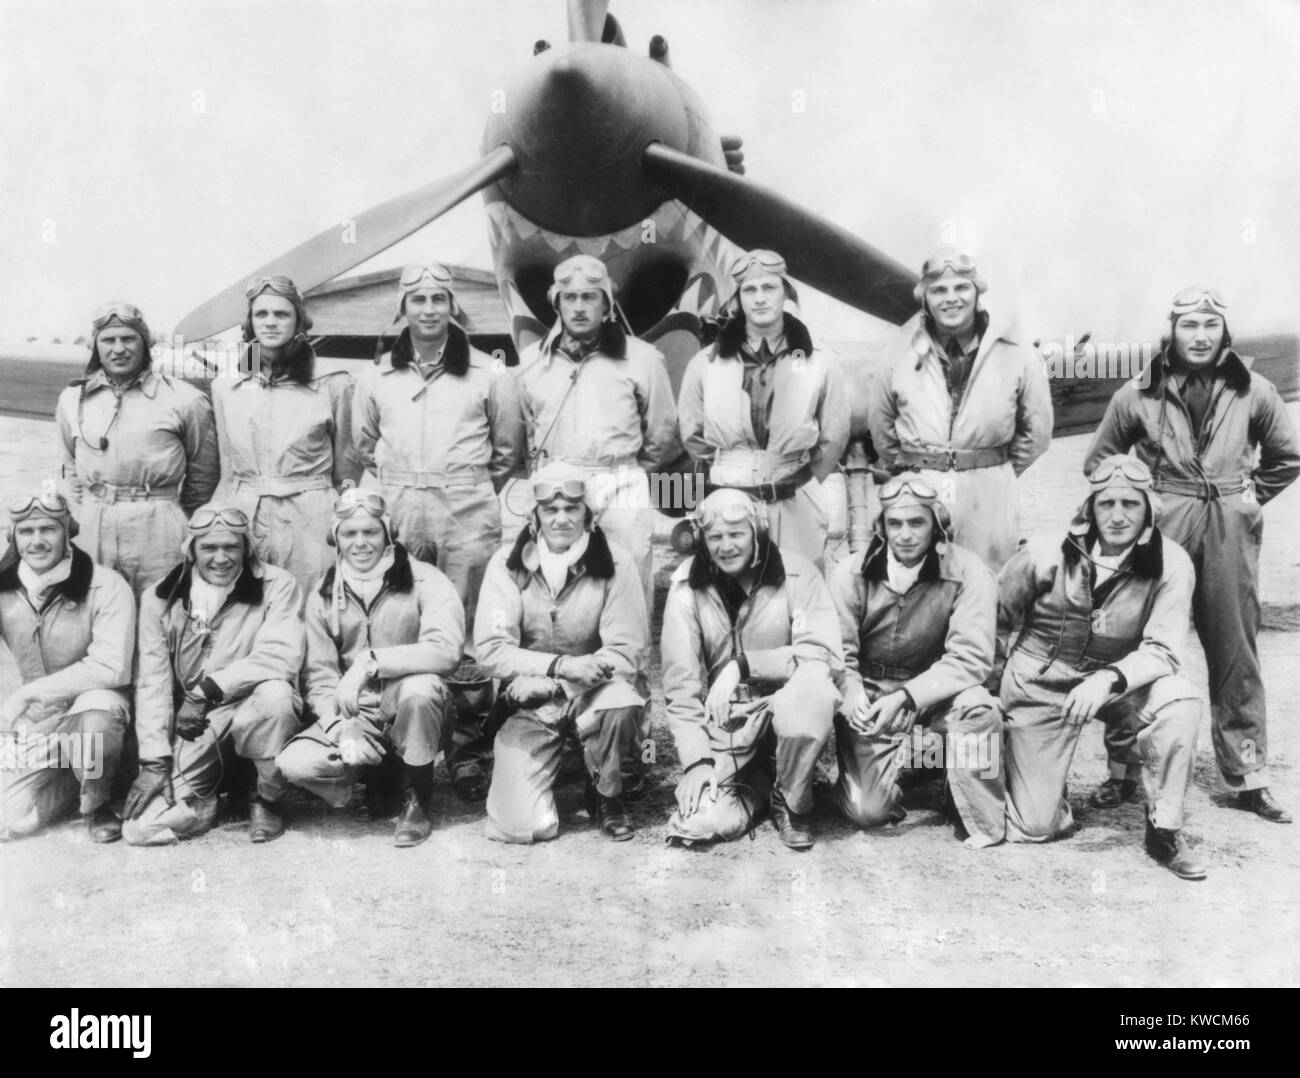 Die Piloten der Flying Tigers, American freiwillige fliegen und kämpfen in China im März 1942. L-R Vordere Reihe: C.R. Bond; G.L. Paxton; s. Wright; J.V. Newkirk; D.L. Hügel; J. G. hell; und E.S. Conant. Hintere Reihe: R.B. Keeton; F. Lawlor; Z.B. Ricketts; R.F. Layher; 1234567; Geselbracht T.A. Jones; F. Schiel. - (BSLOC_2014_14_14) Stockfoto